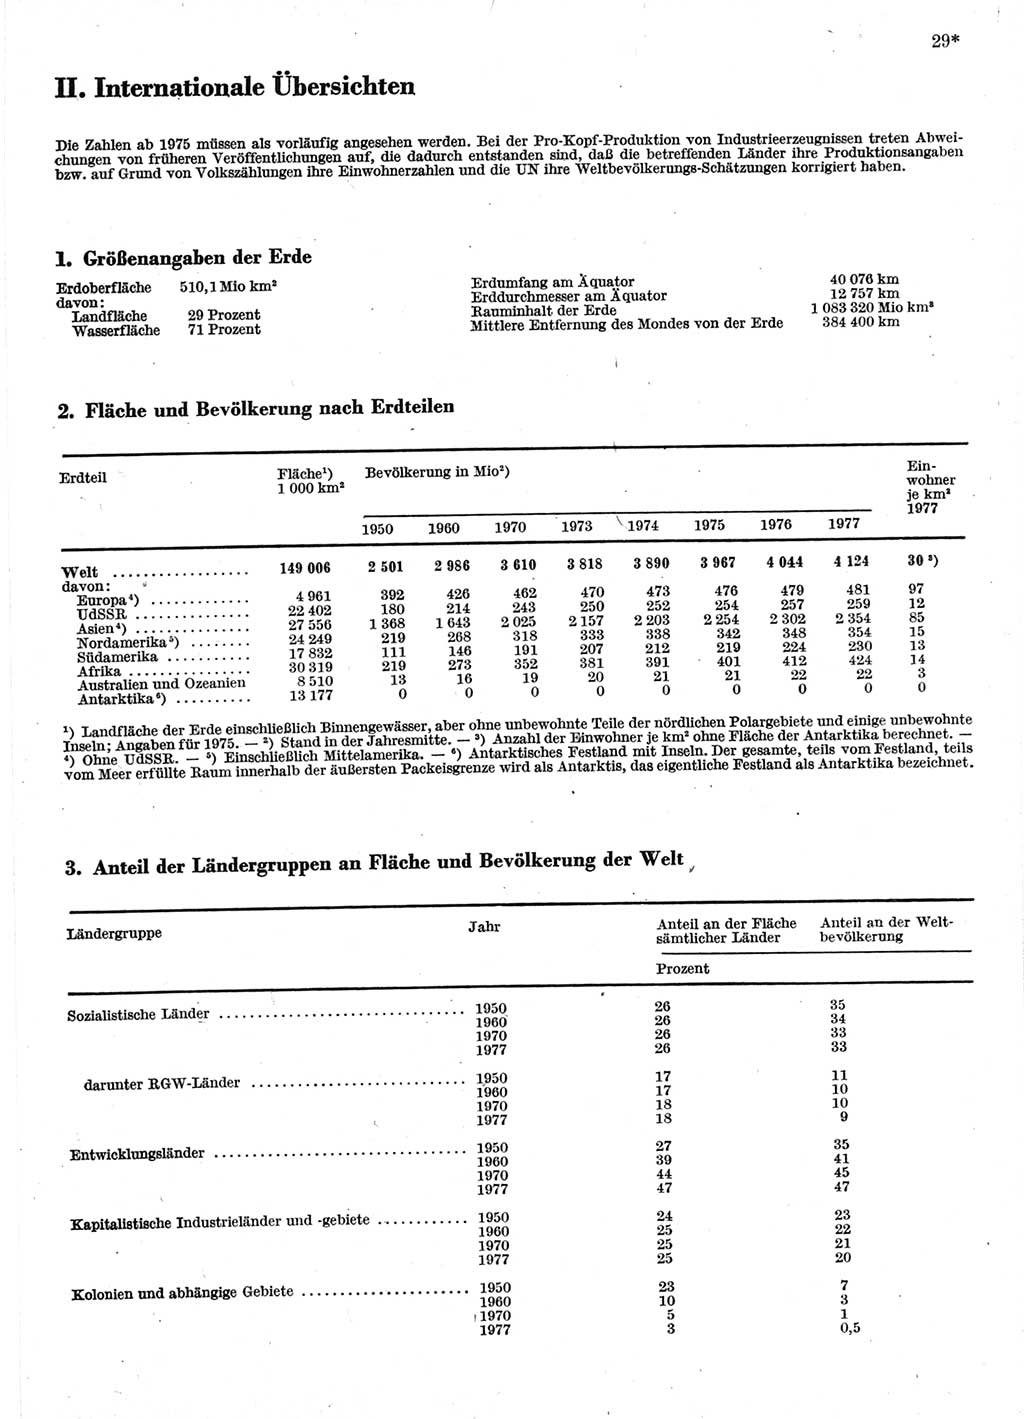 Statistisches Jahrbuch der Deutschen Demokratischen Republik (DDR) 1978, Seite 29 (Stat. Jb. DDR 1978, S. 29)